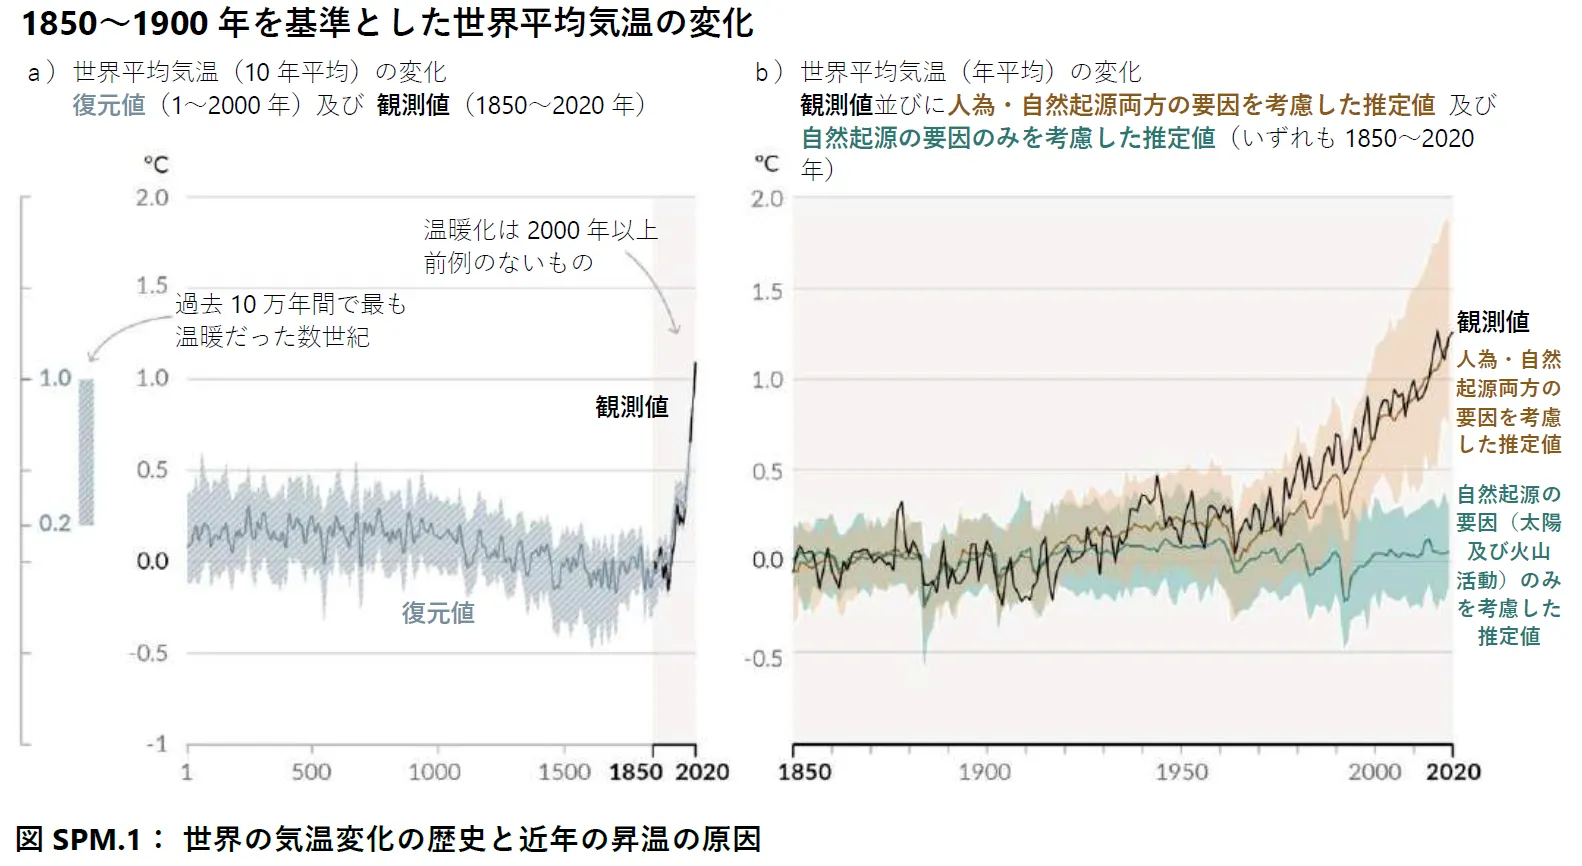 世界の気温変化の歴史と近年の昇温の原因